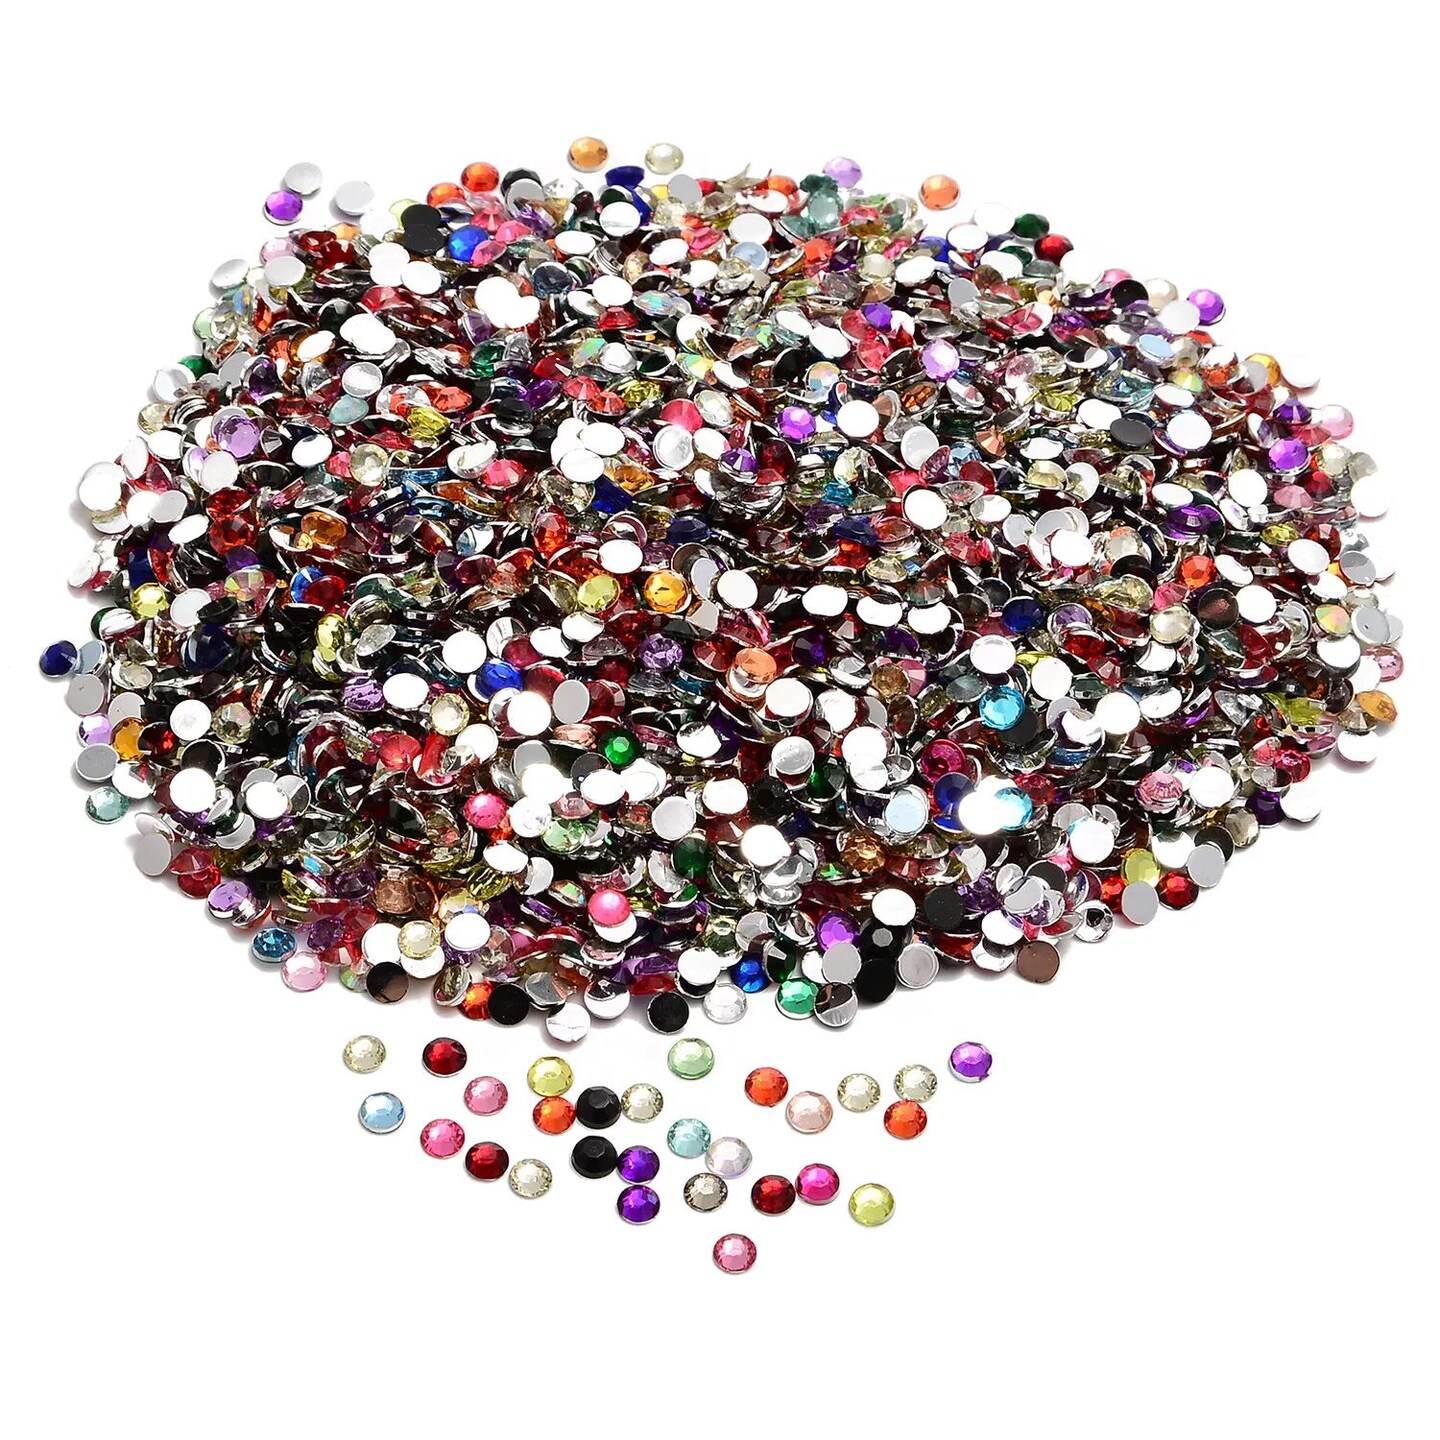 Kitcheniva Flat Back Acrylic Rhinestones Round Loose Beads Mix Color